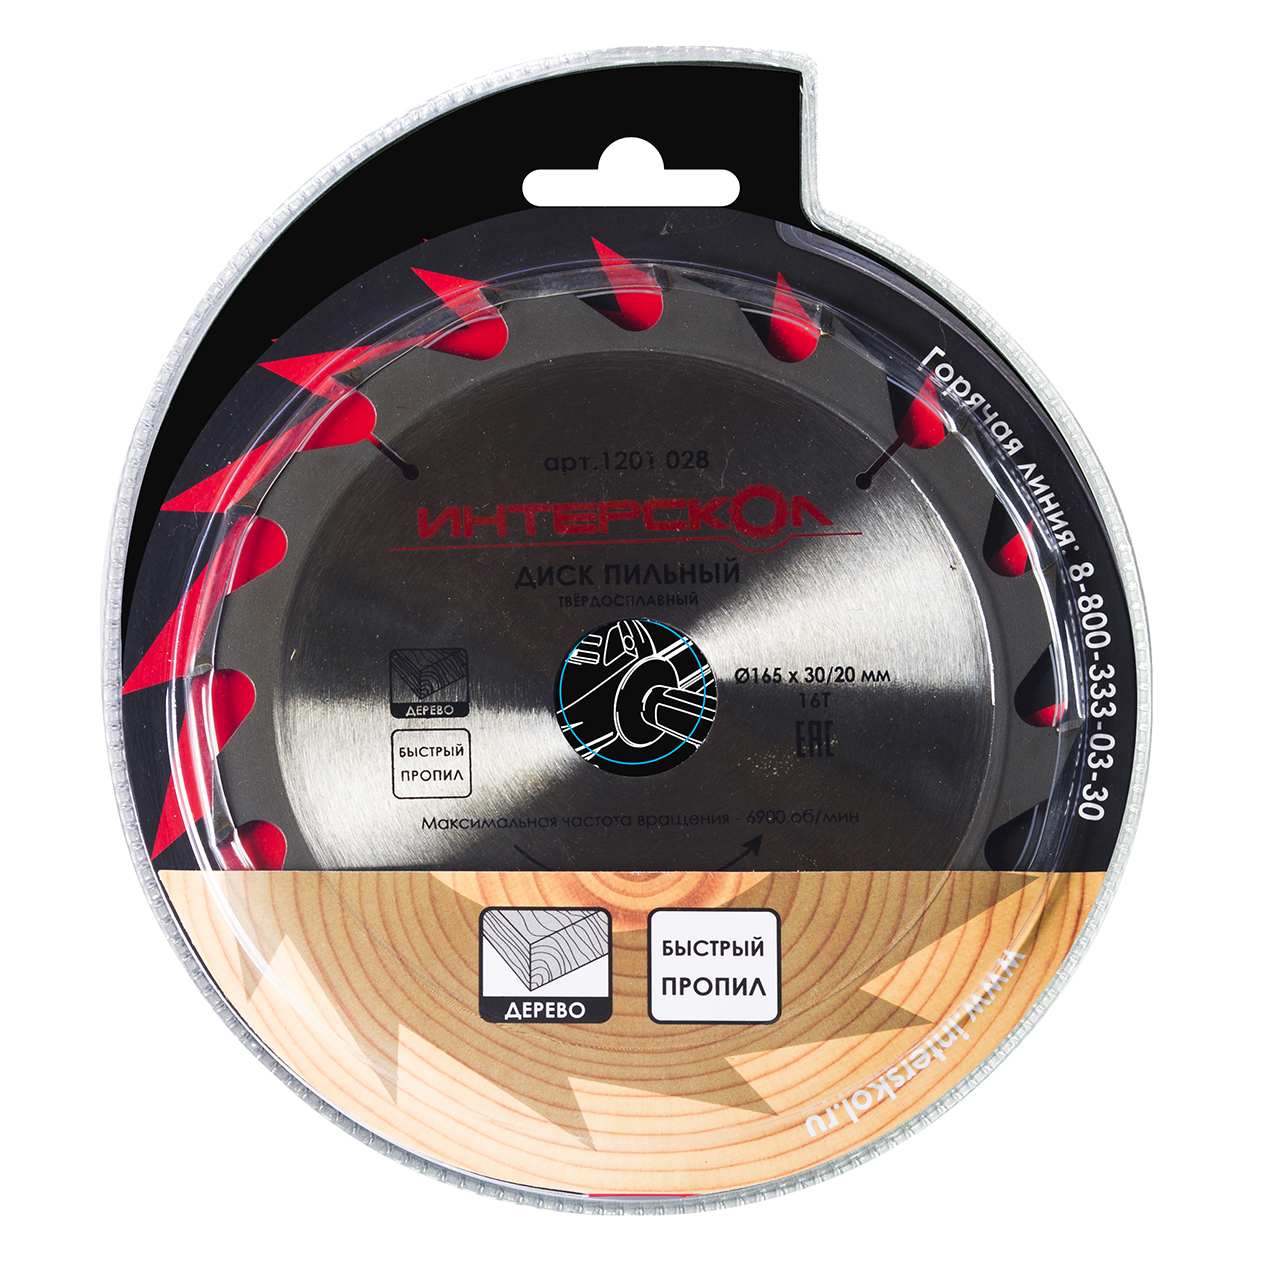 Диски пильные для дисковых и торцовочных пил ИНТЕРСКОЛ Пильный диск по дереву (быстрый пропил) 165 мм